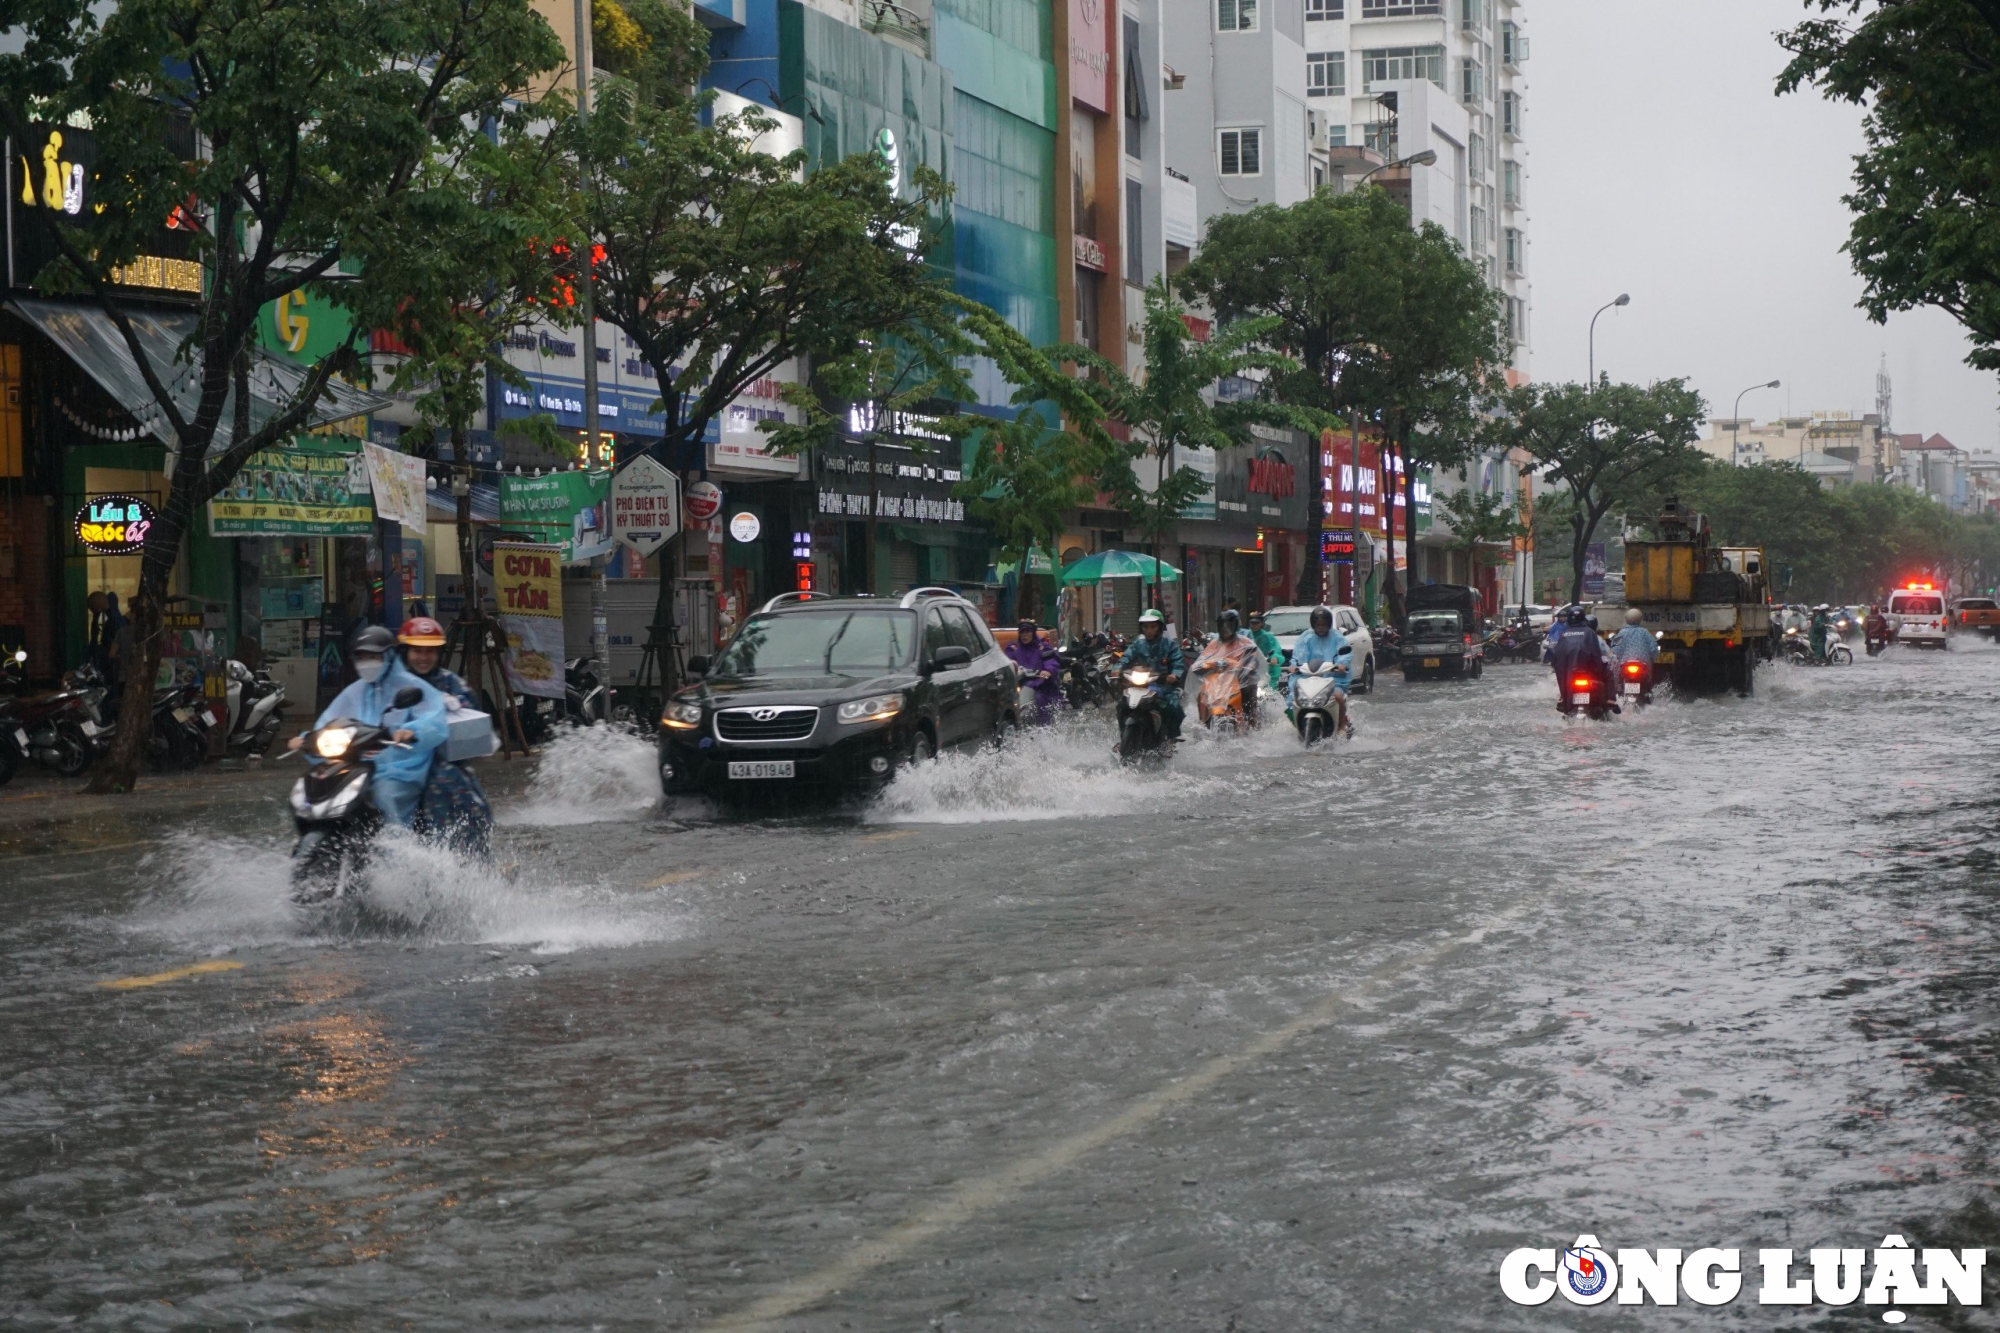             Đường phố bị ngập sâu, người Đà Nẵng bì bõm đẩy xe trong biển nước    